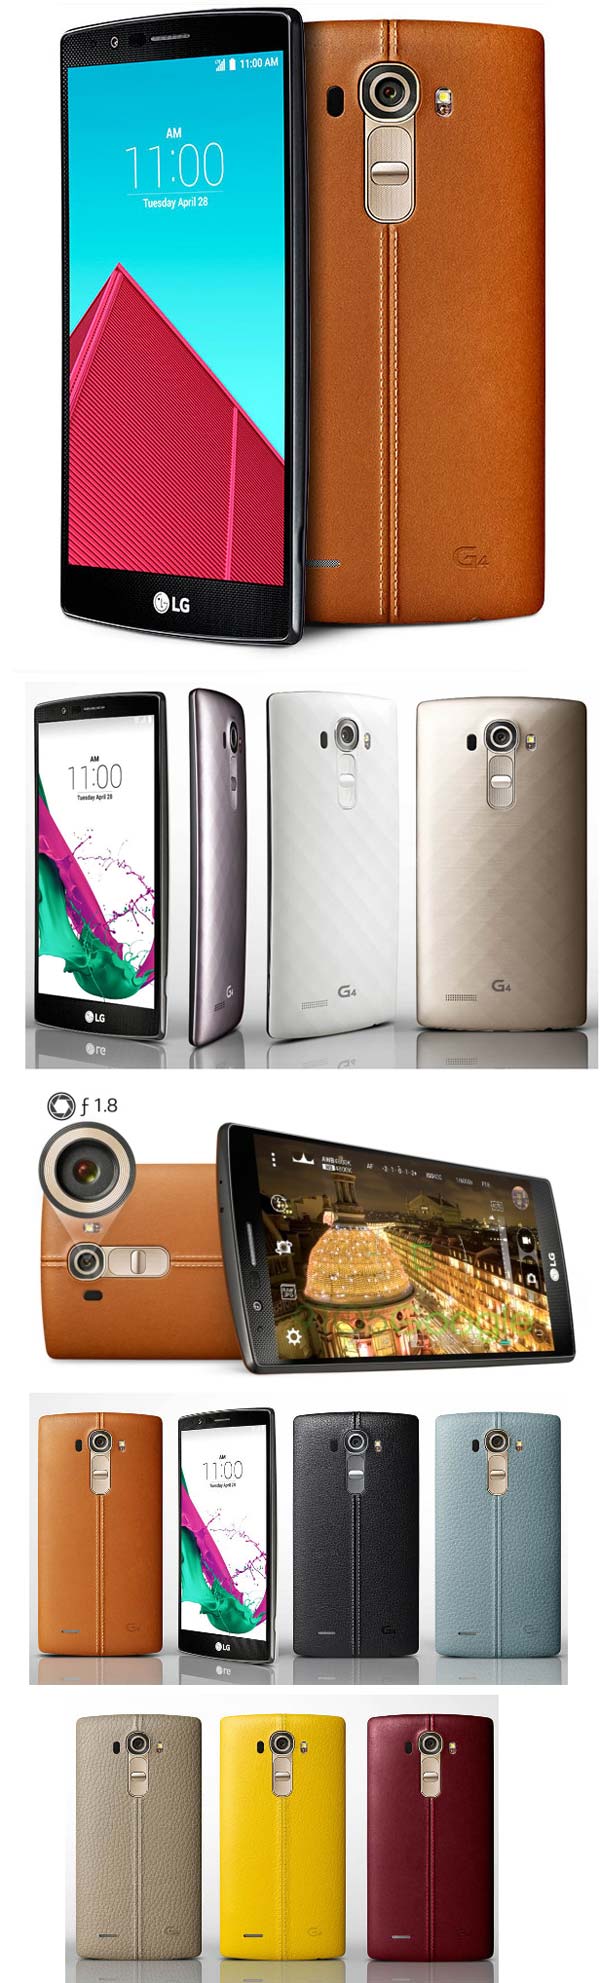 Официальные фото фаблета LG G4